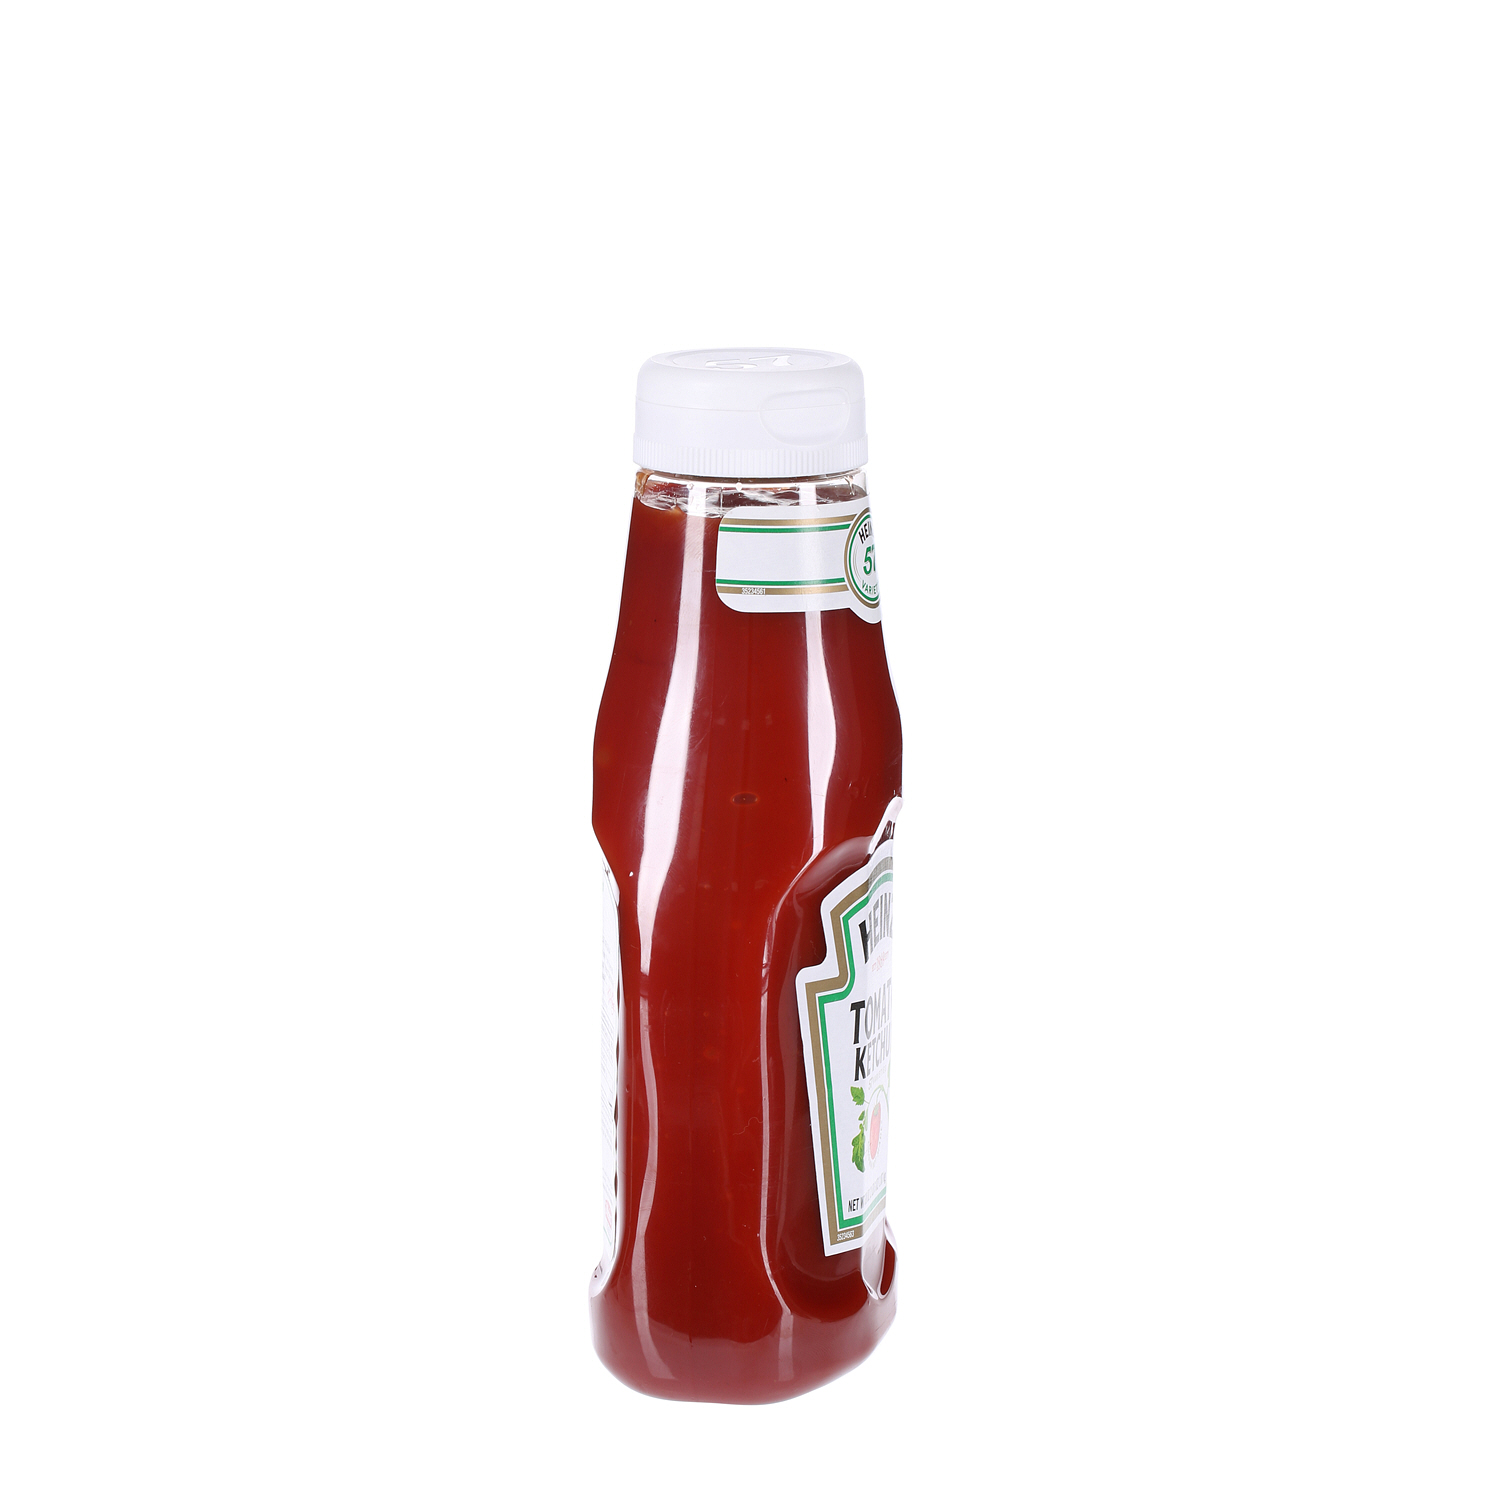 Heinz Tomato Ketchup 38Oz